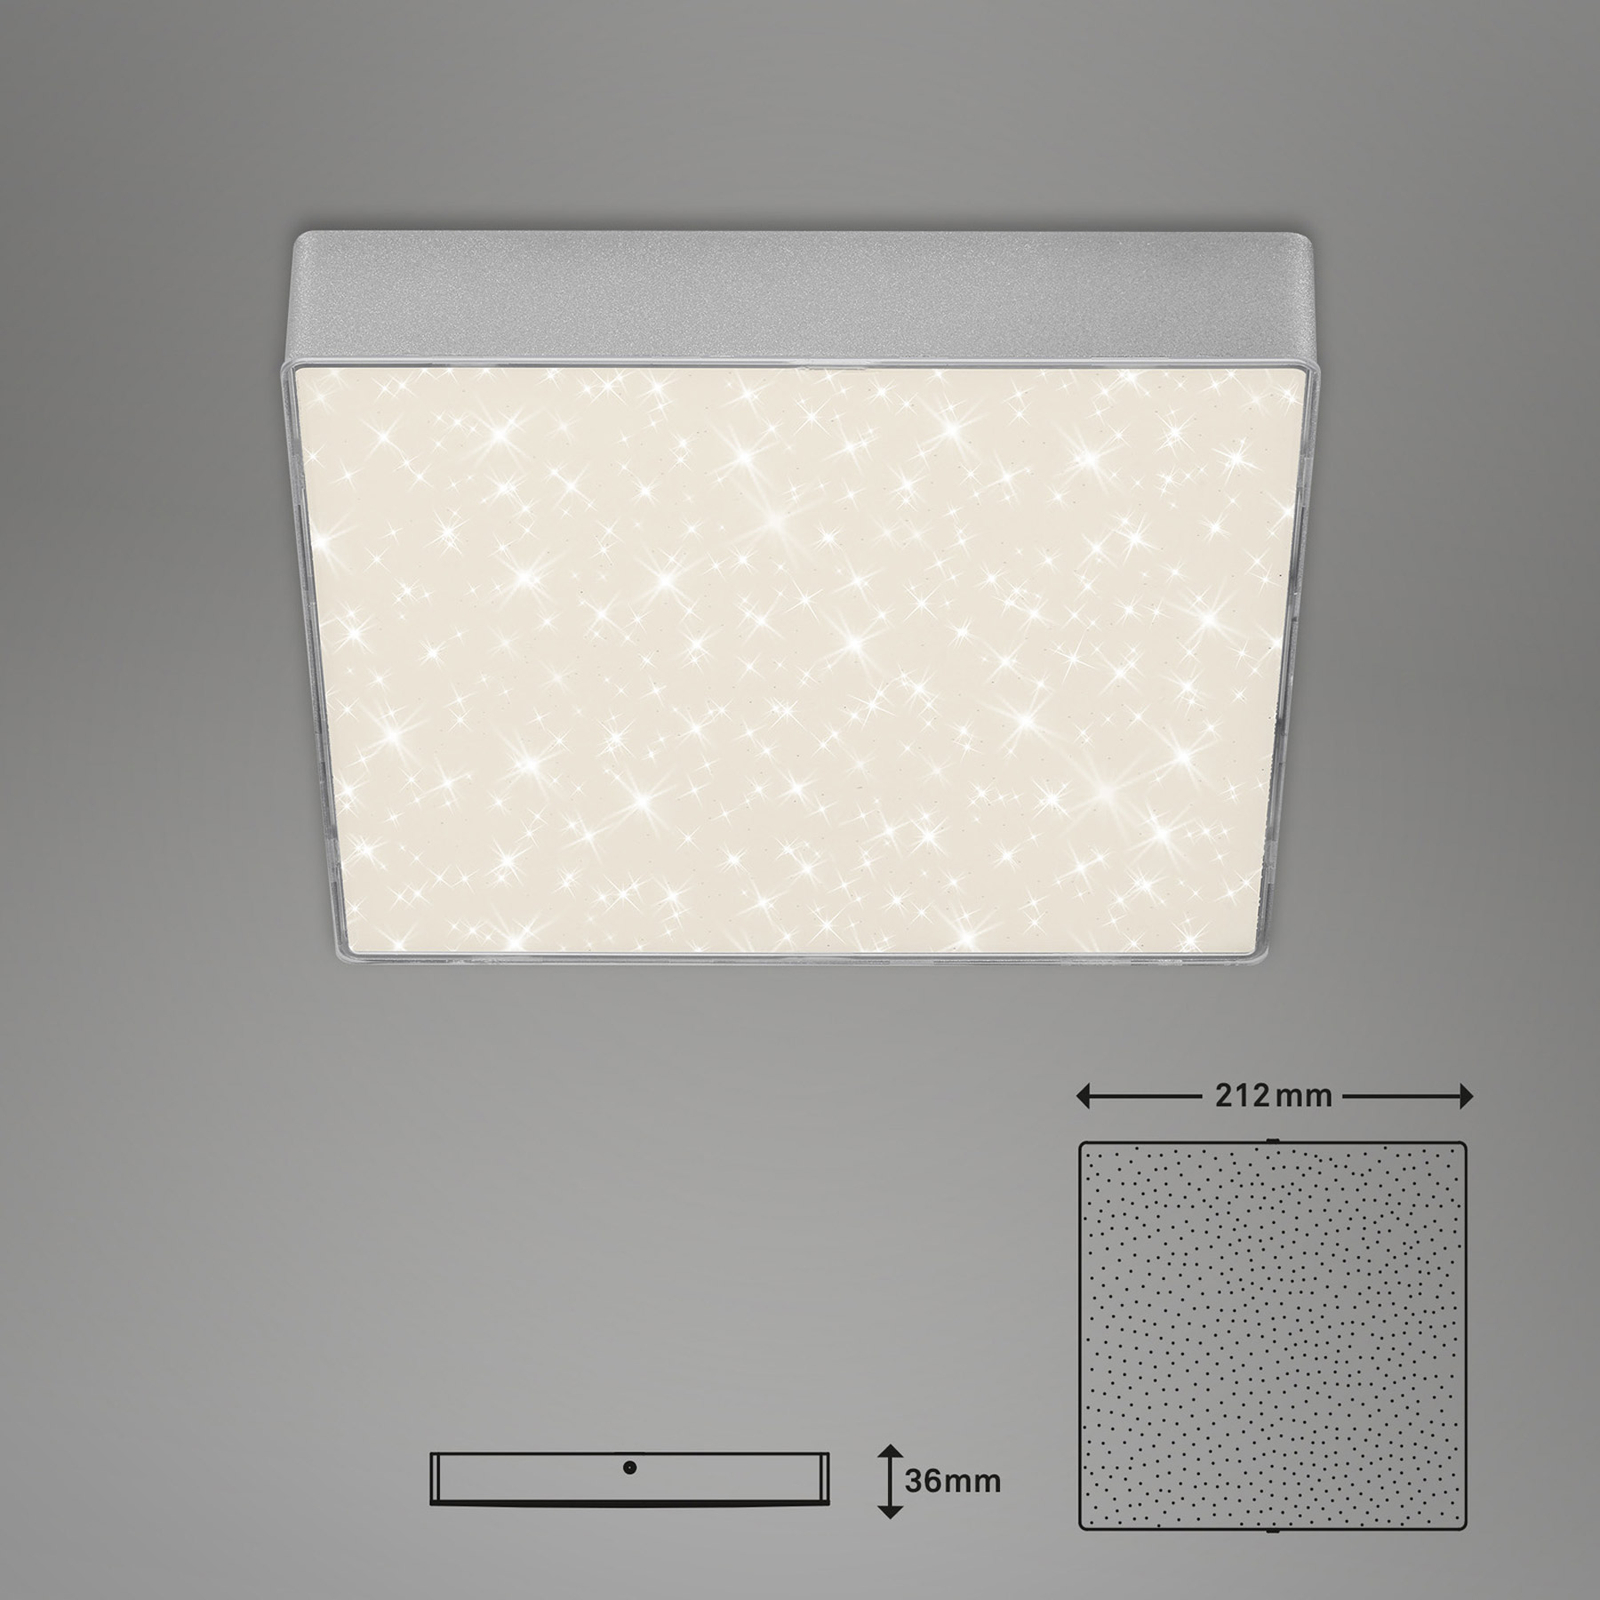 LED lubinis šviestuvas "Flame Star", 21,2 x 21,2 cm, sidabrinis